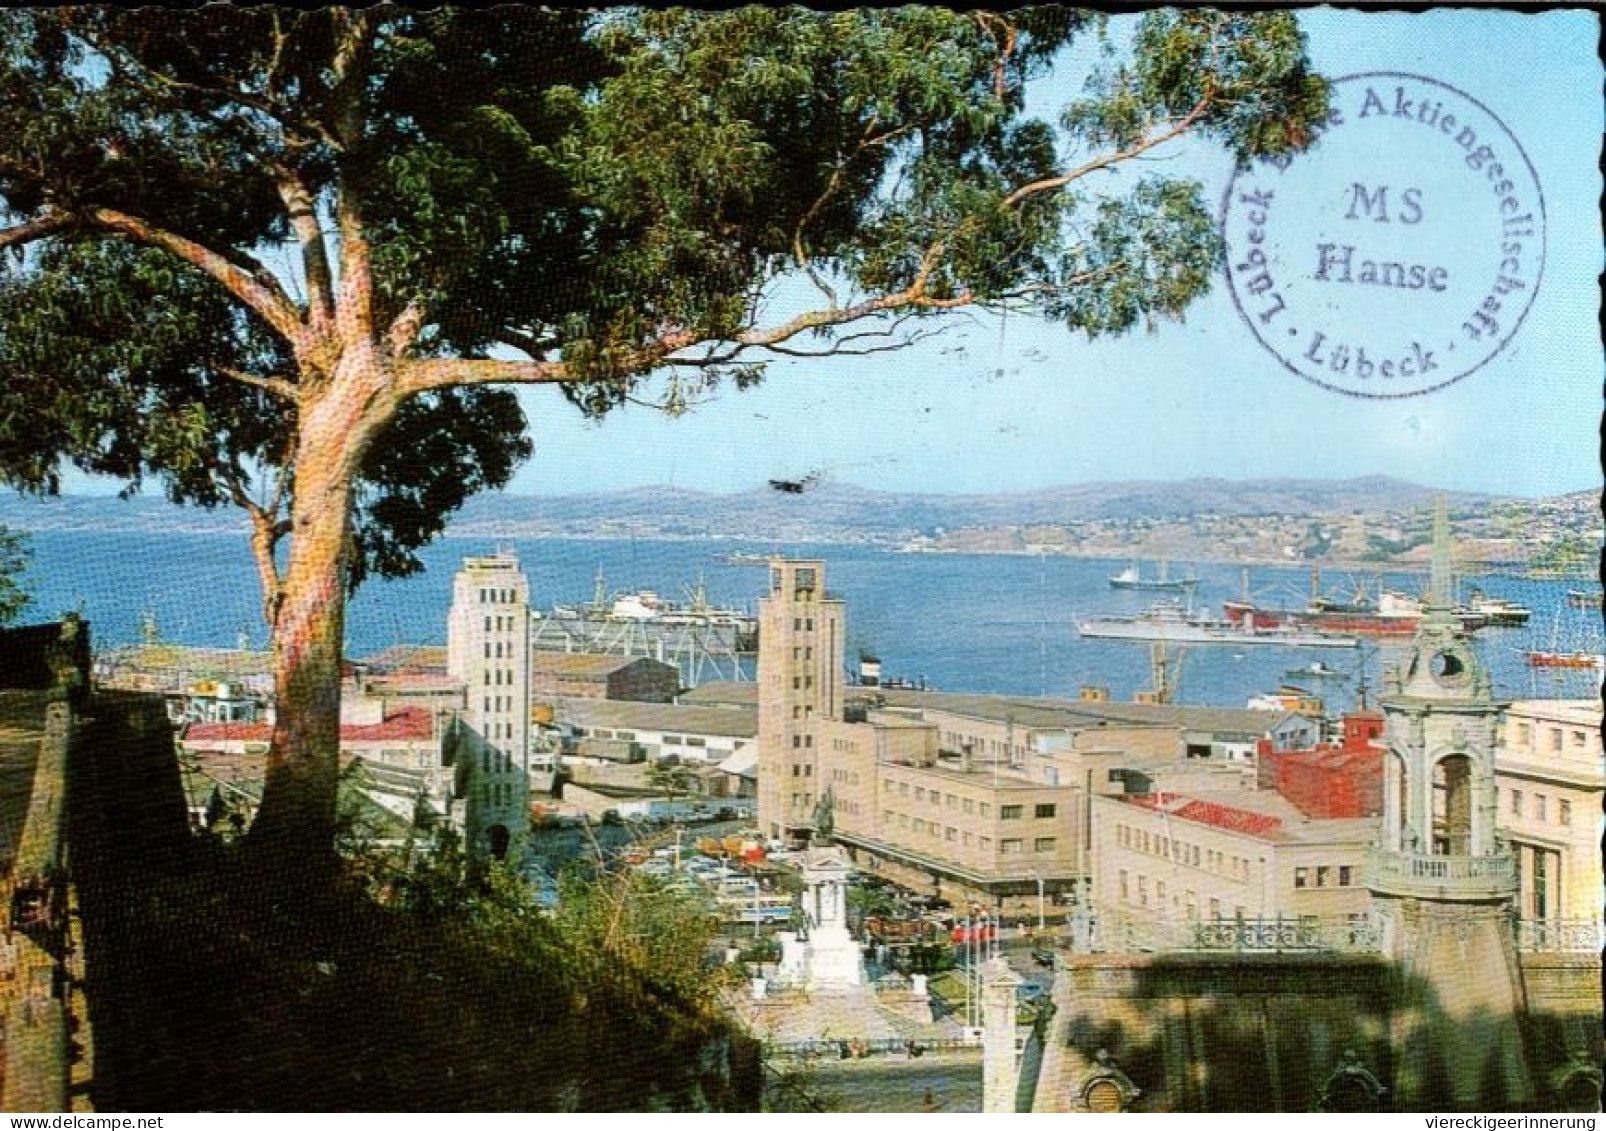 !  1966 Ansichtskarte Aus Valparaiso Chile, Hafen, Harbour, Luftpost, Abs. Seemann Vom Schiff MS Hanse, Lübeck - Chile